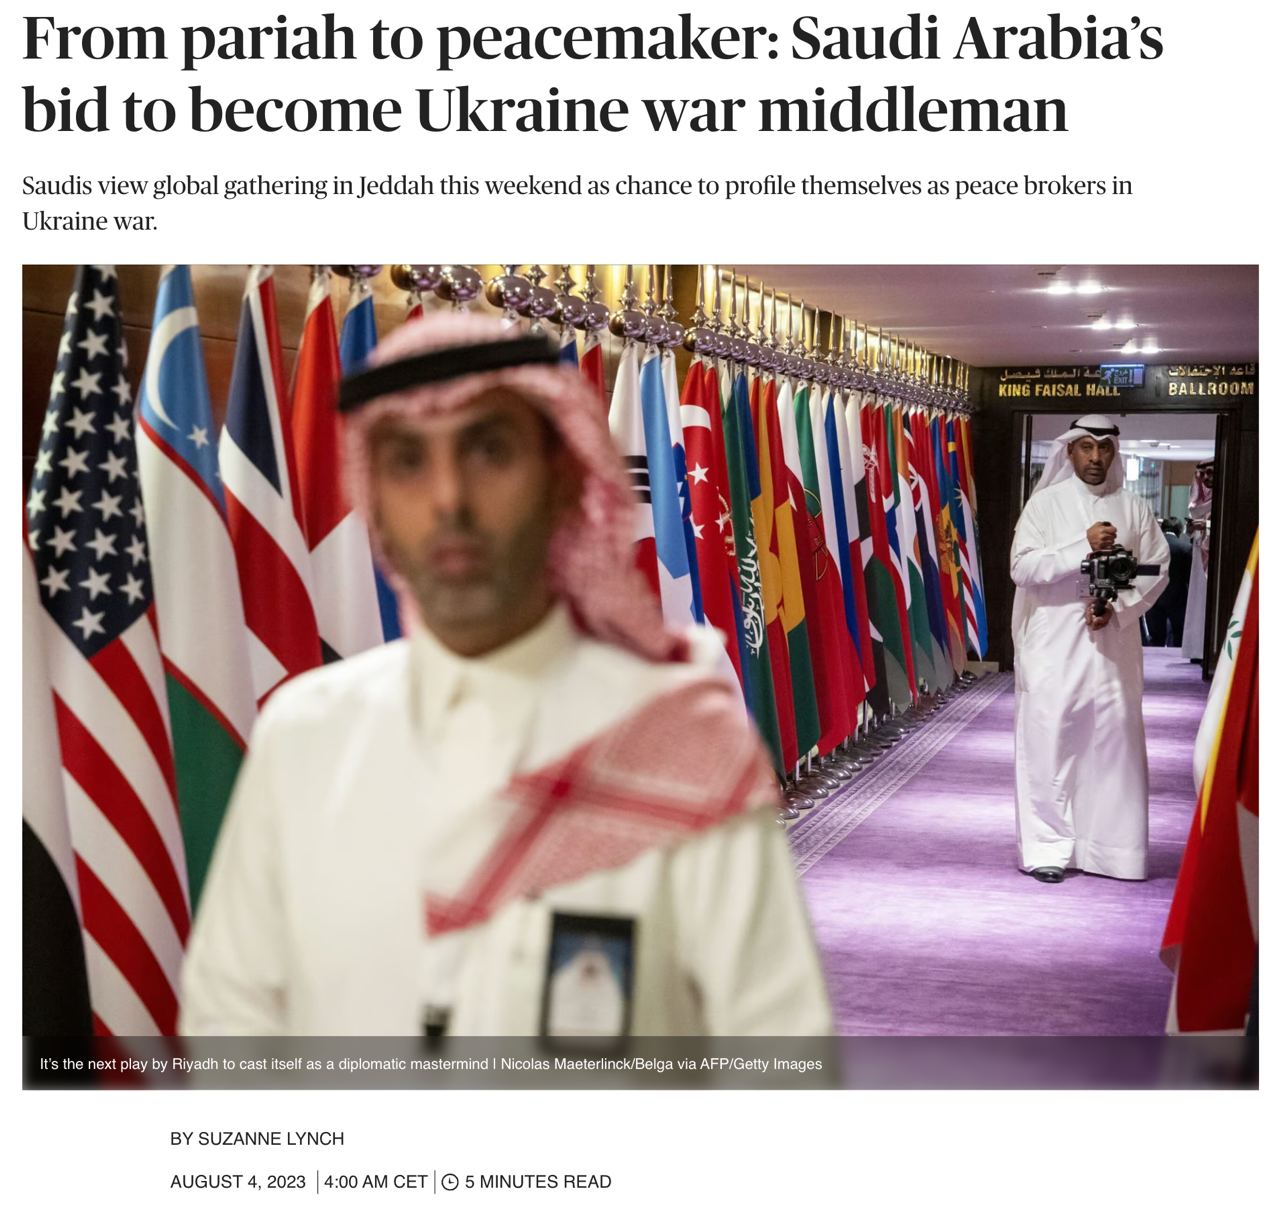 Саудовская Аравия хочет представить себя миротворцем в вопросе Украины